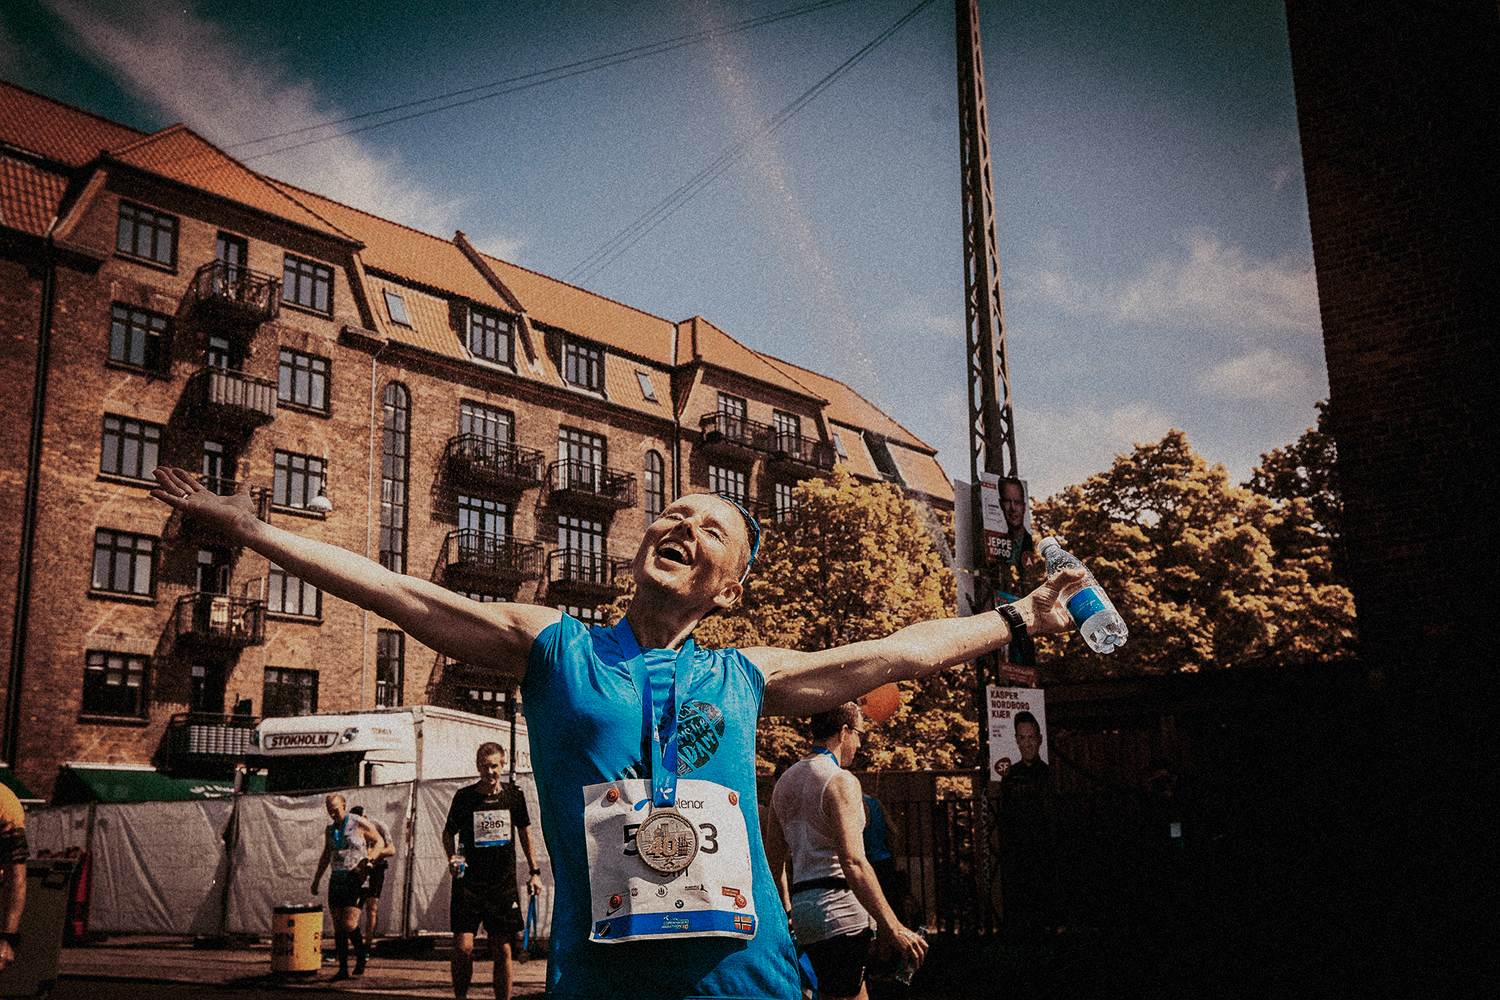 Copenhagen Marathon